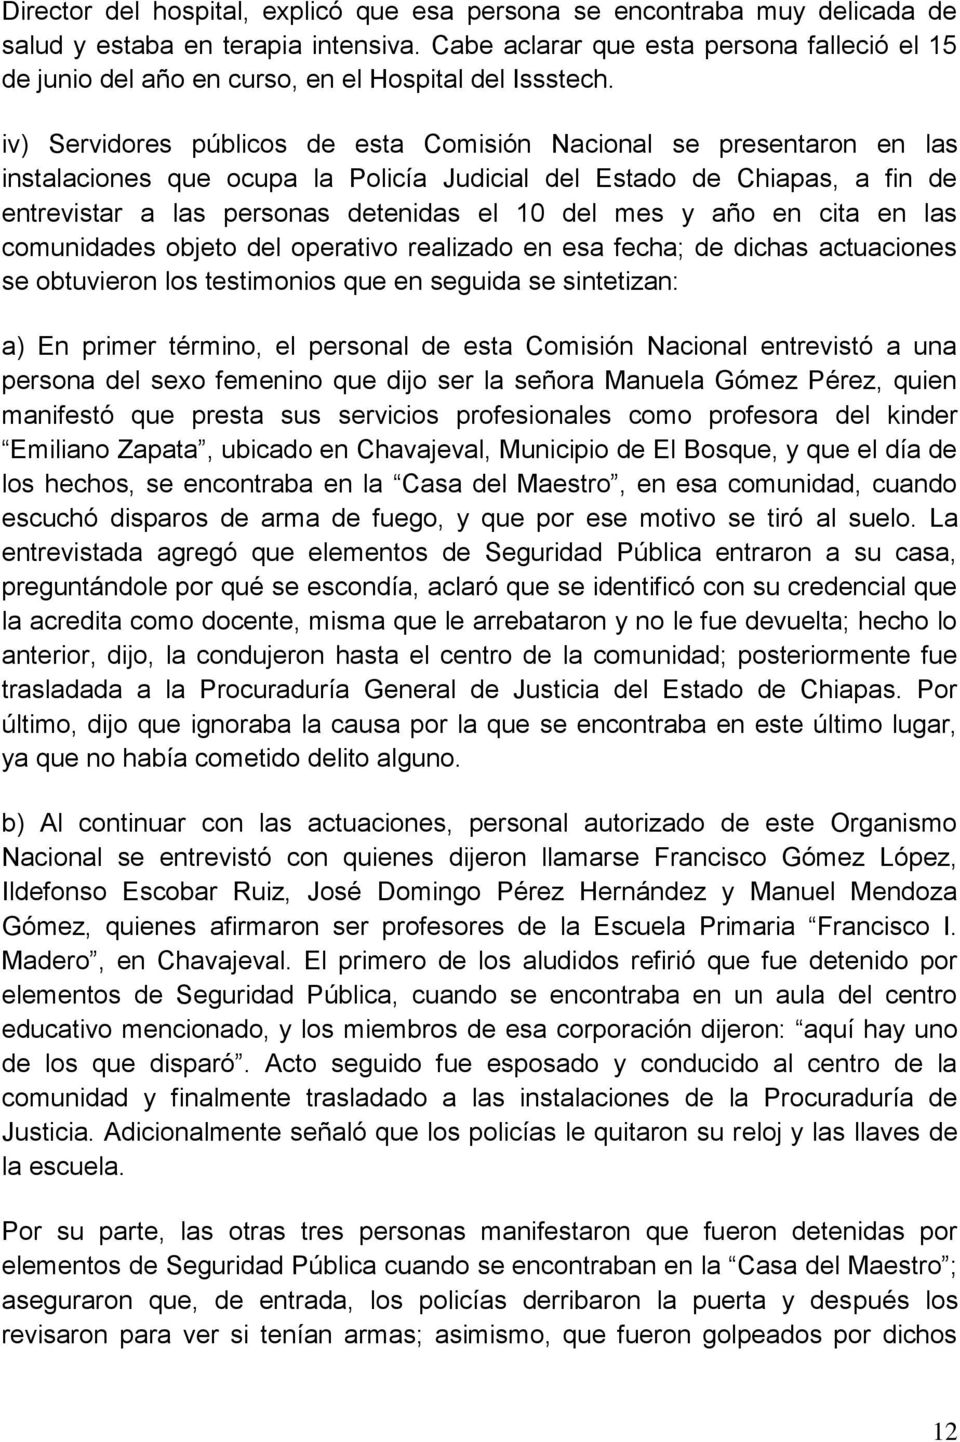 iv) Servidores públicos de esta Comisión Nacional se presentaron en las instalaciones que ocupa la Policía Judicial del Estado de Chiapas, a fin de entrevistar a las personas detenidas el 10 del mes